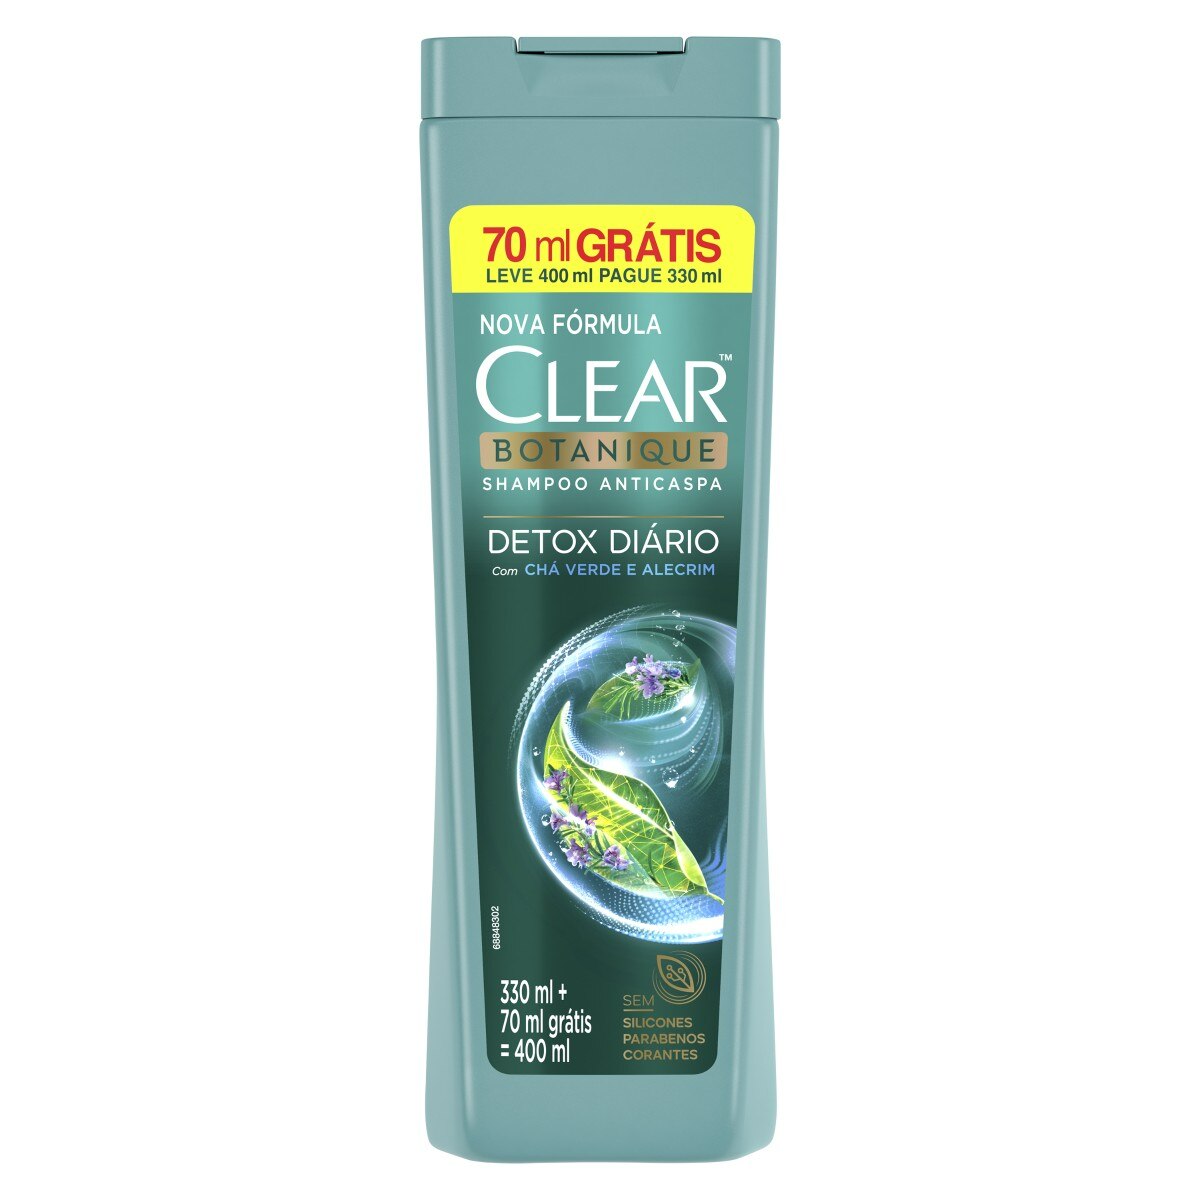 Shampoo Clear Anticaspa Detox Diario Leve 400ml Pague 330ml